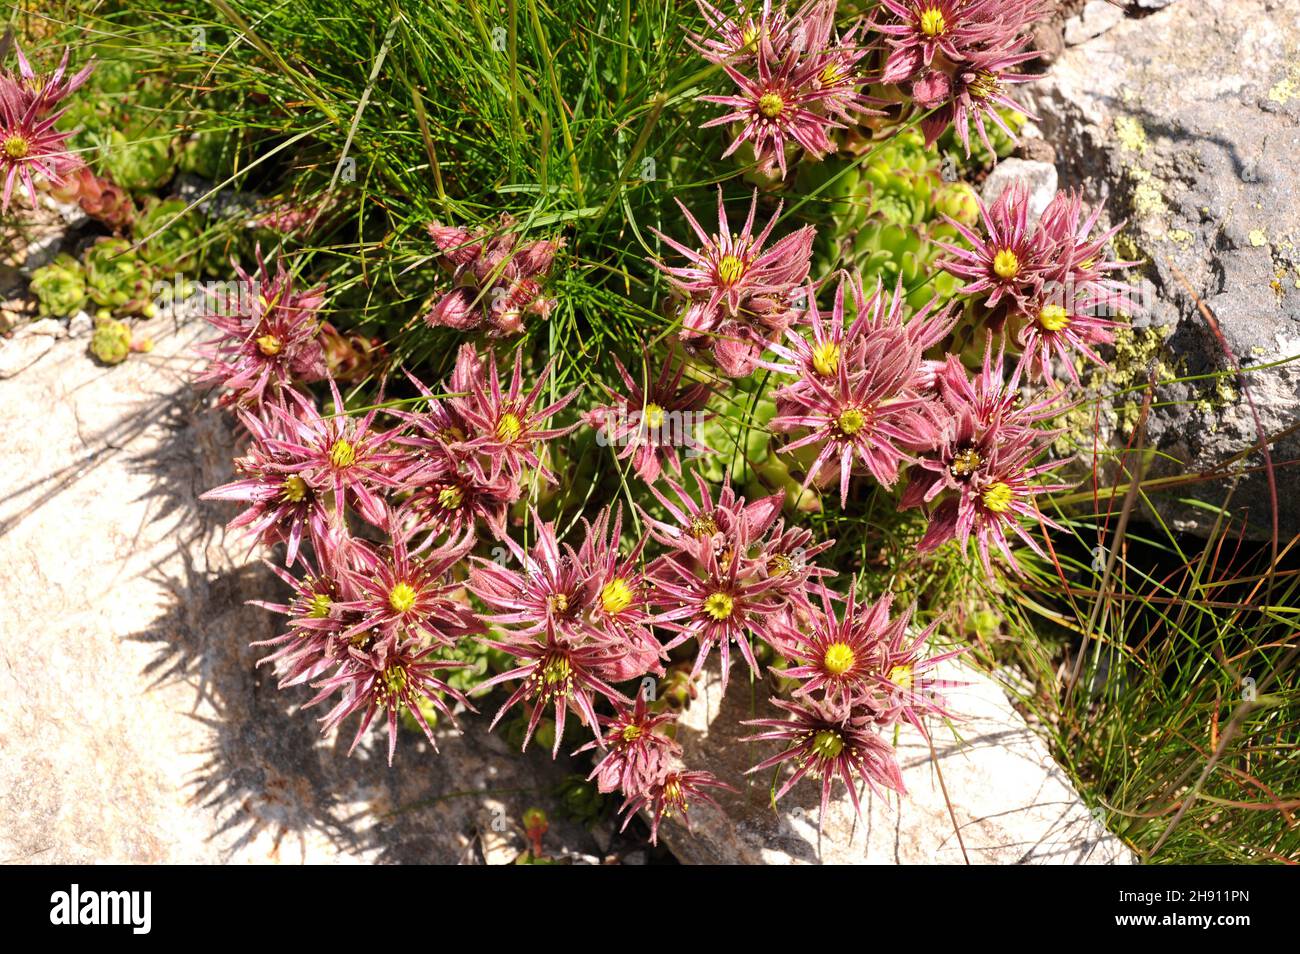 Siempreviva de montana (Sempervivum montanum) es una planta suculenta  nativa de las montañas europeas. Detalle de flores. Esta foto fue tomada en  Val d'Aran Fotografía de stock - Alamy